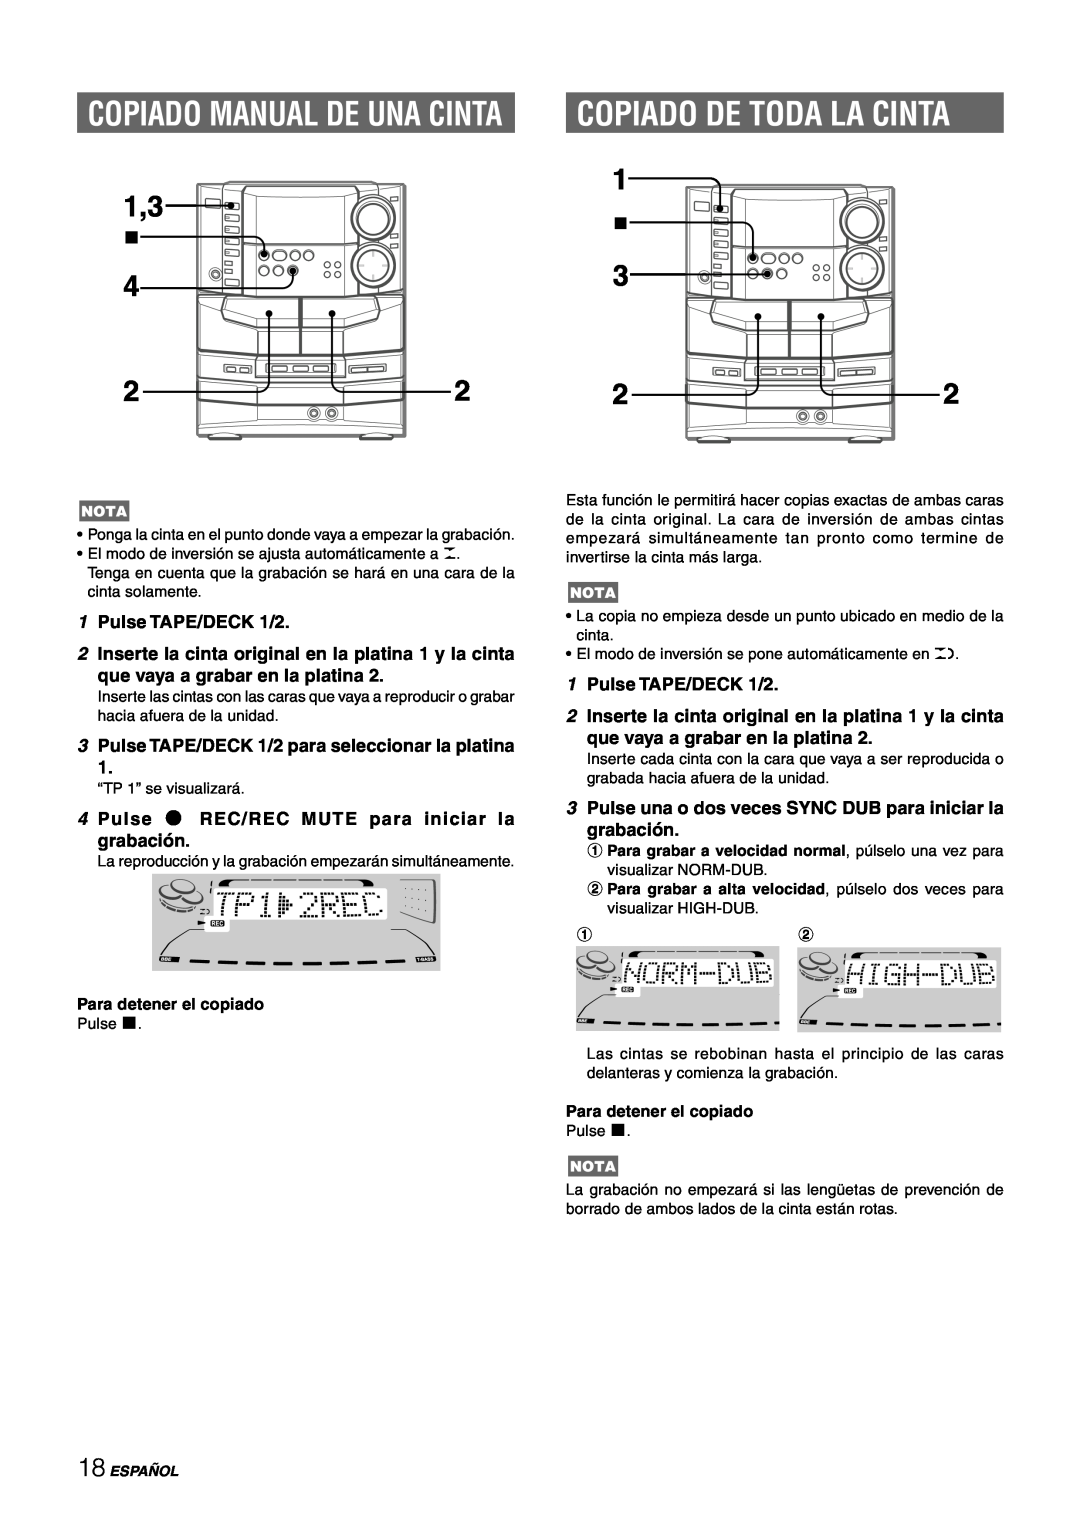 Sony NSX-AJ80 Copiado Manual De Una Cinta, Copiado De Toda La Cinta, 1Pulse TAPE/DECK 1/2, que vaya a grabar en la platina 